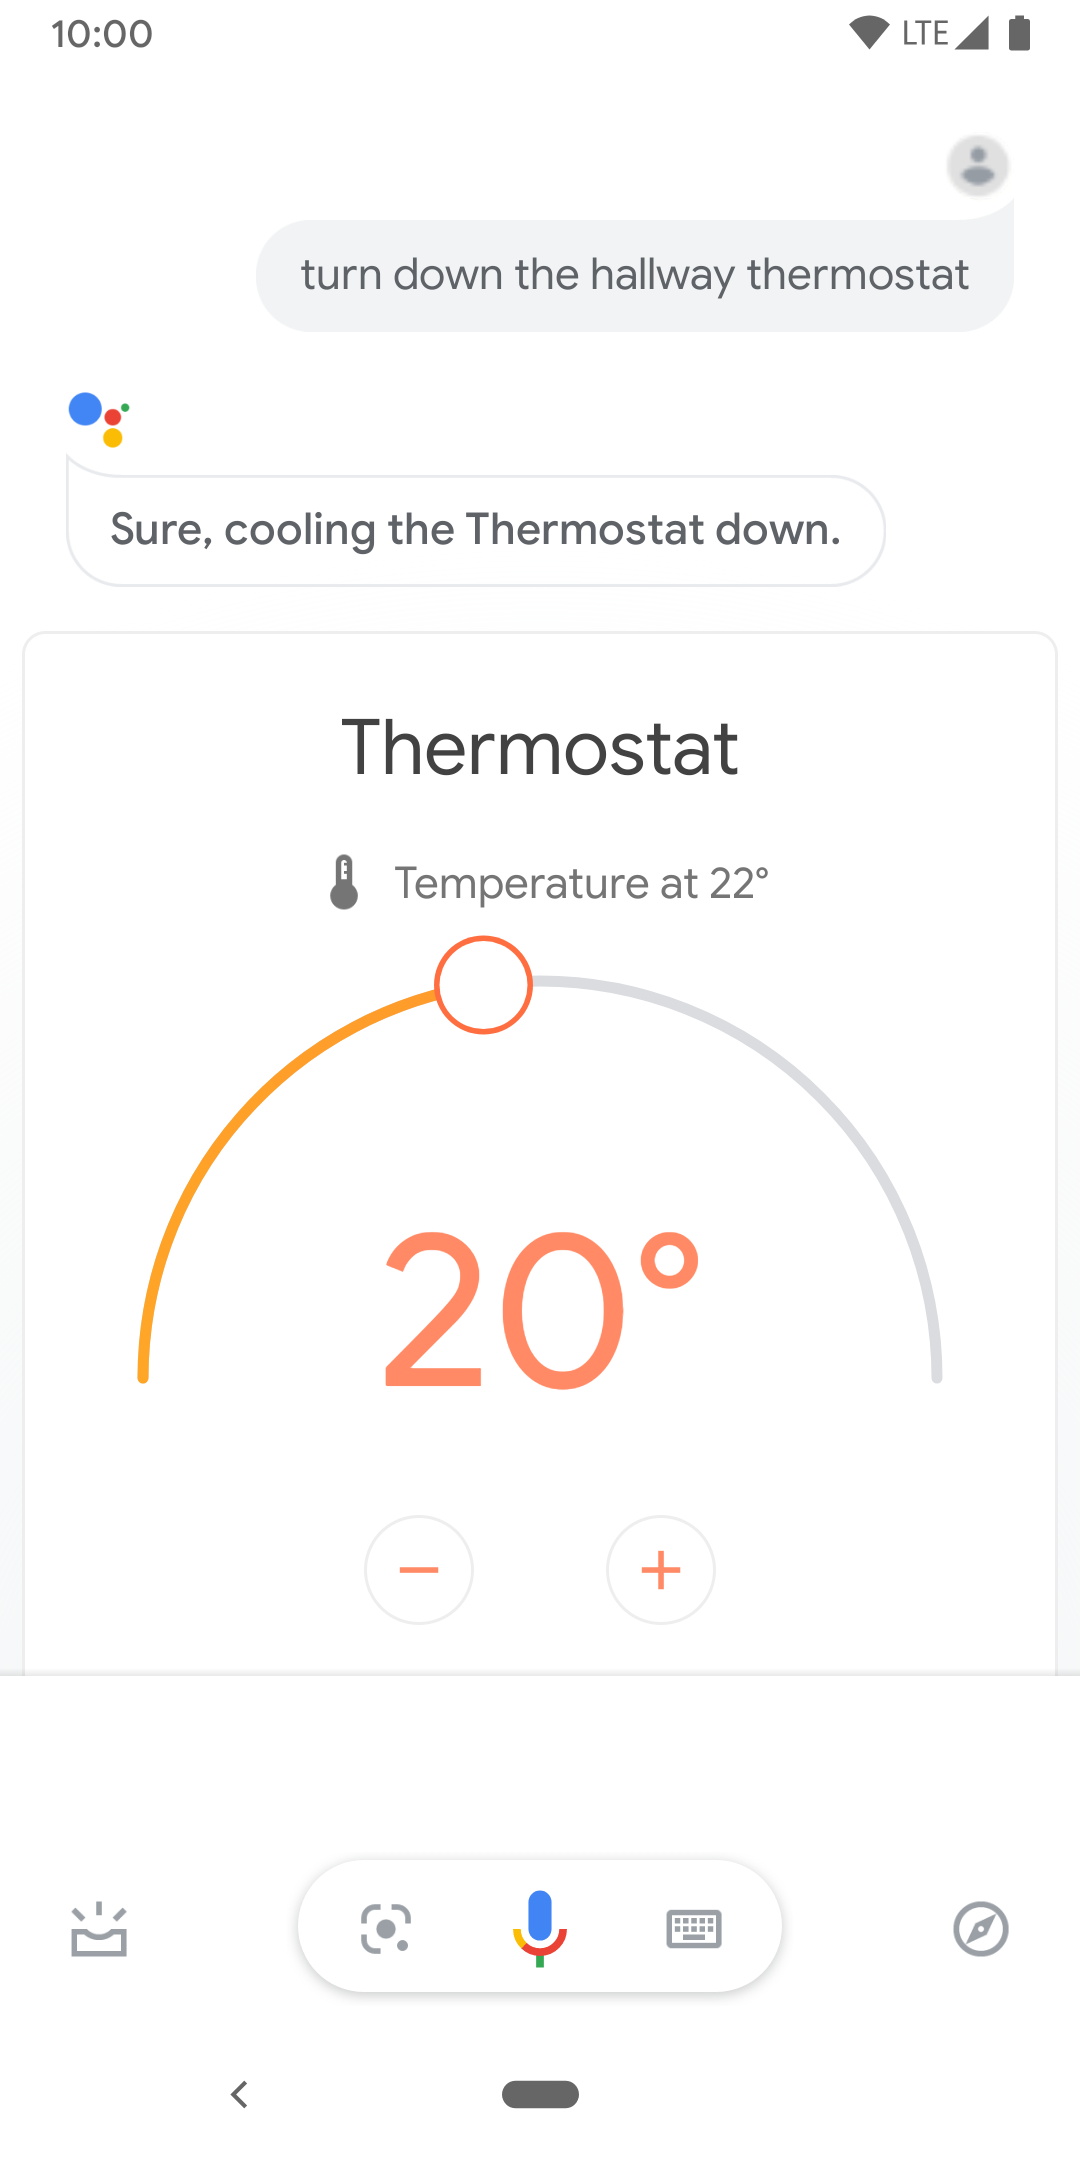 Ten obraz przedstawia sterowanie dotykowe termostatu w korytarzu.